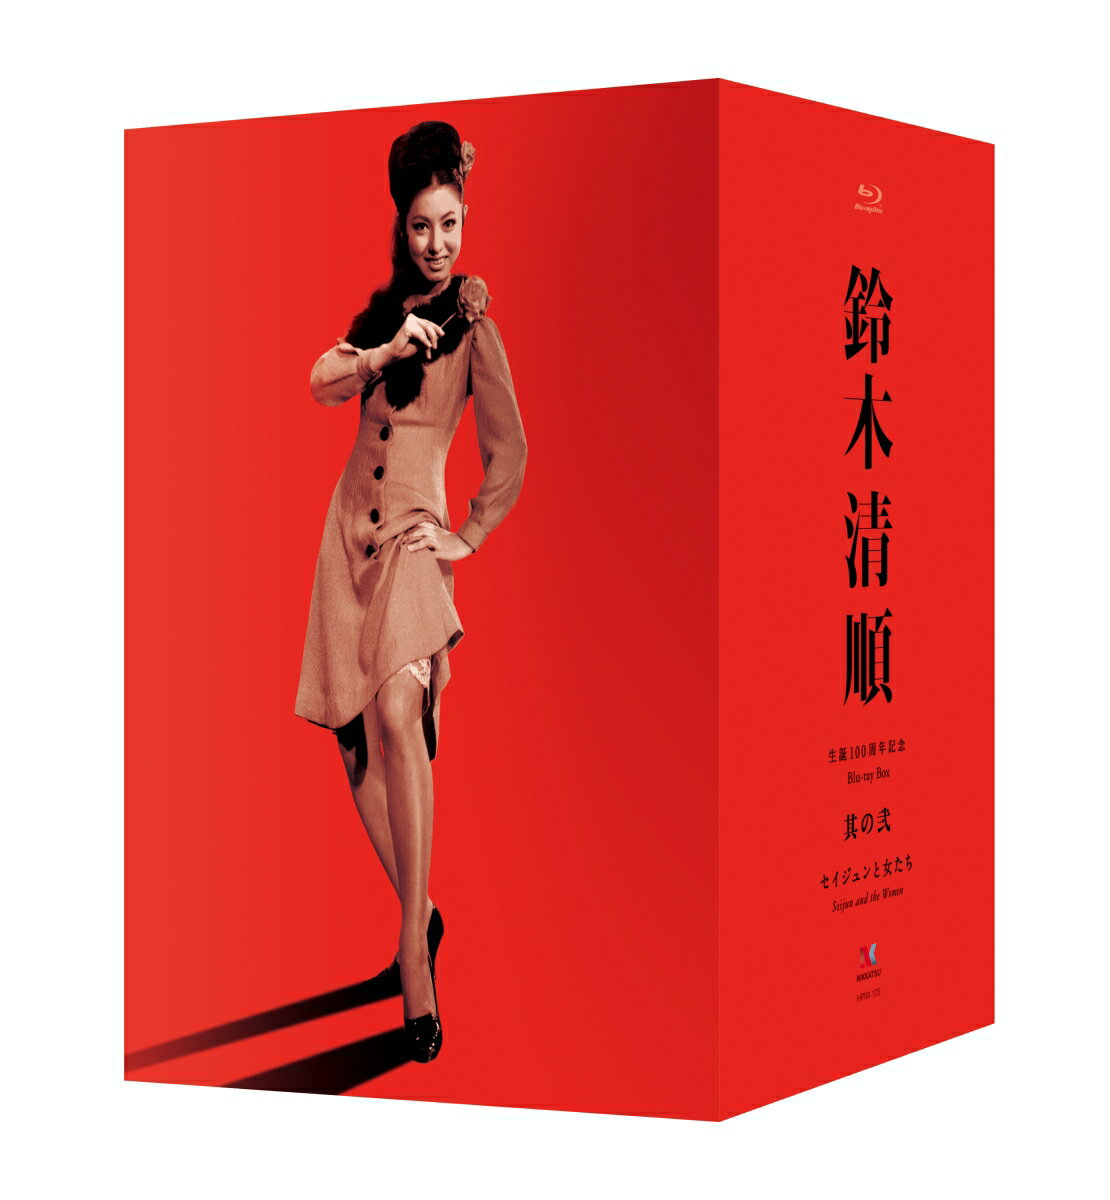 鈴木清順生誕100周年記念シリーズ ブルーレイBOX 其の弐「セイジュンと女たち」【Blu-ray】